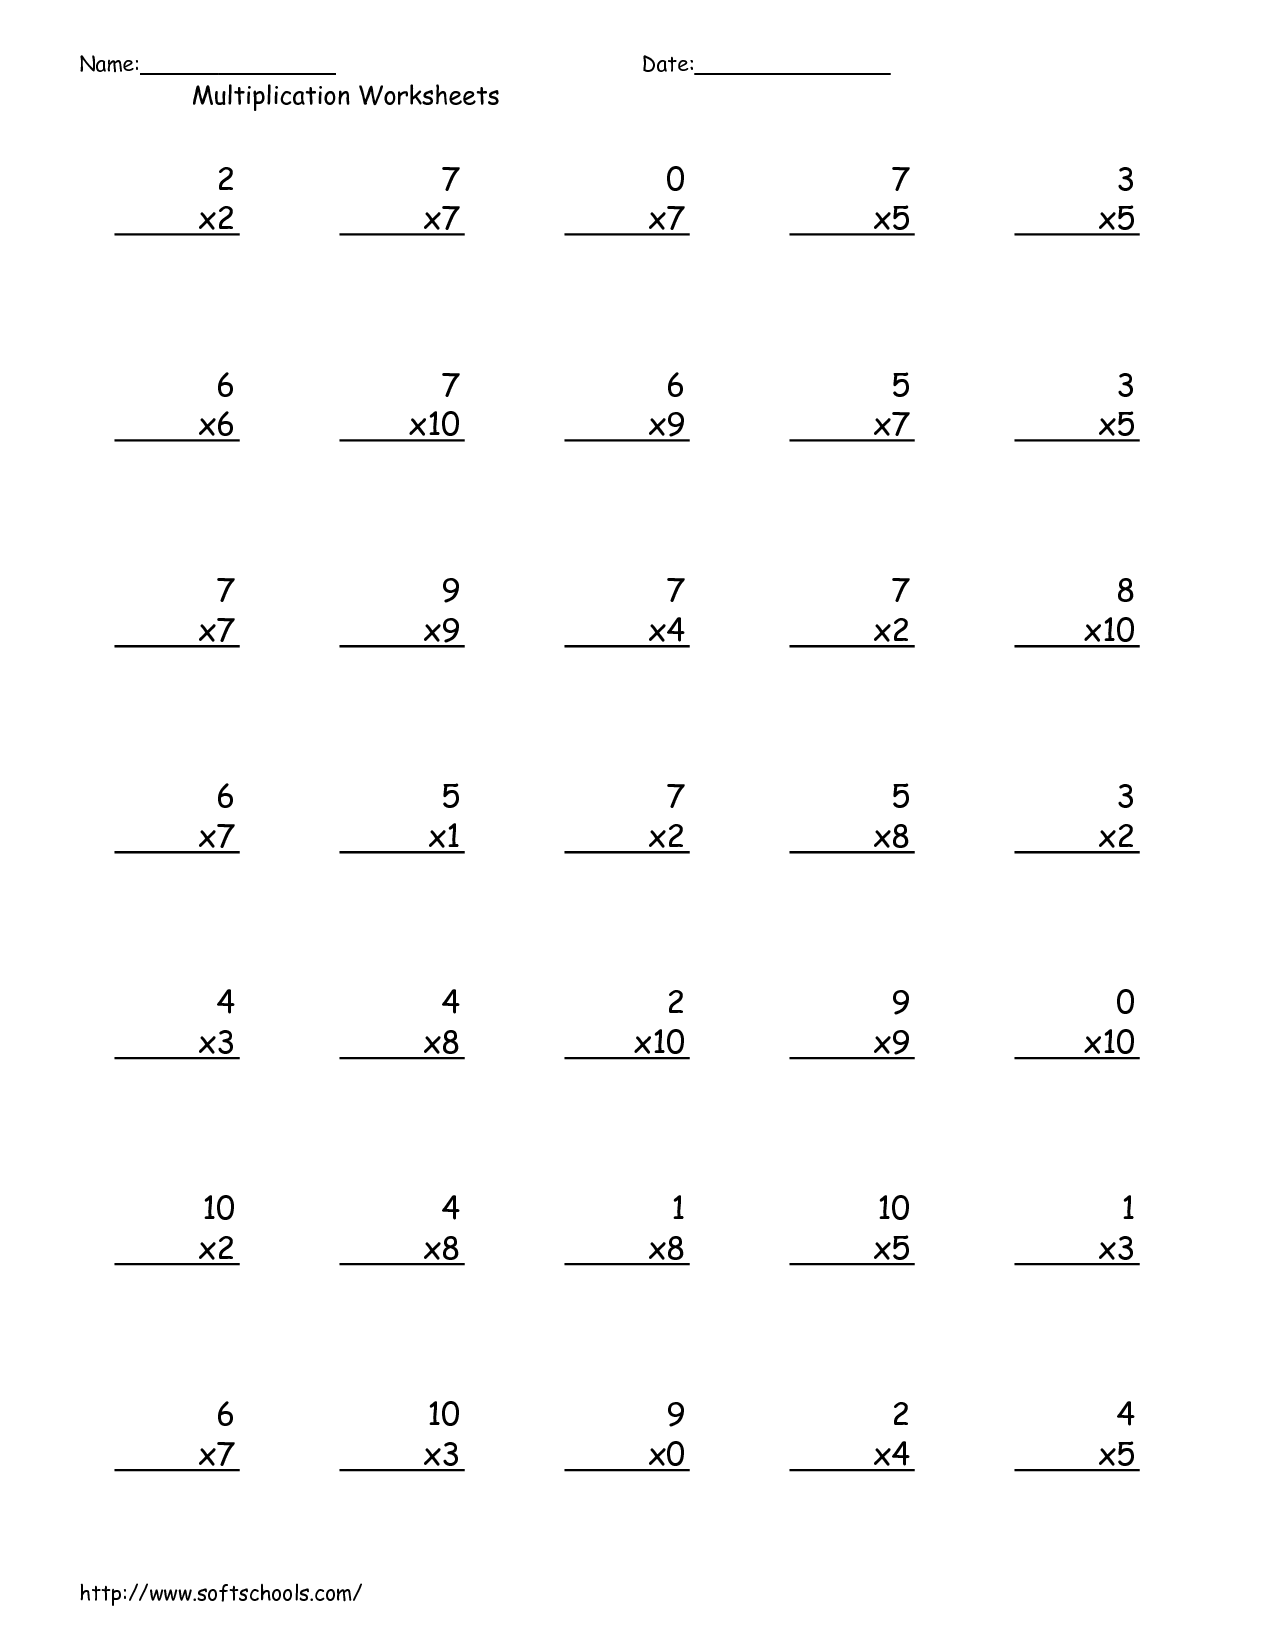 12 Best Images Of Multiplication Worksheets 1 11 100 Question Multiplication Worksheet 1 10 2 